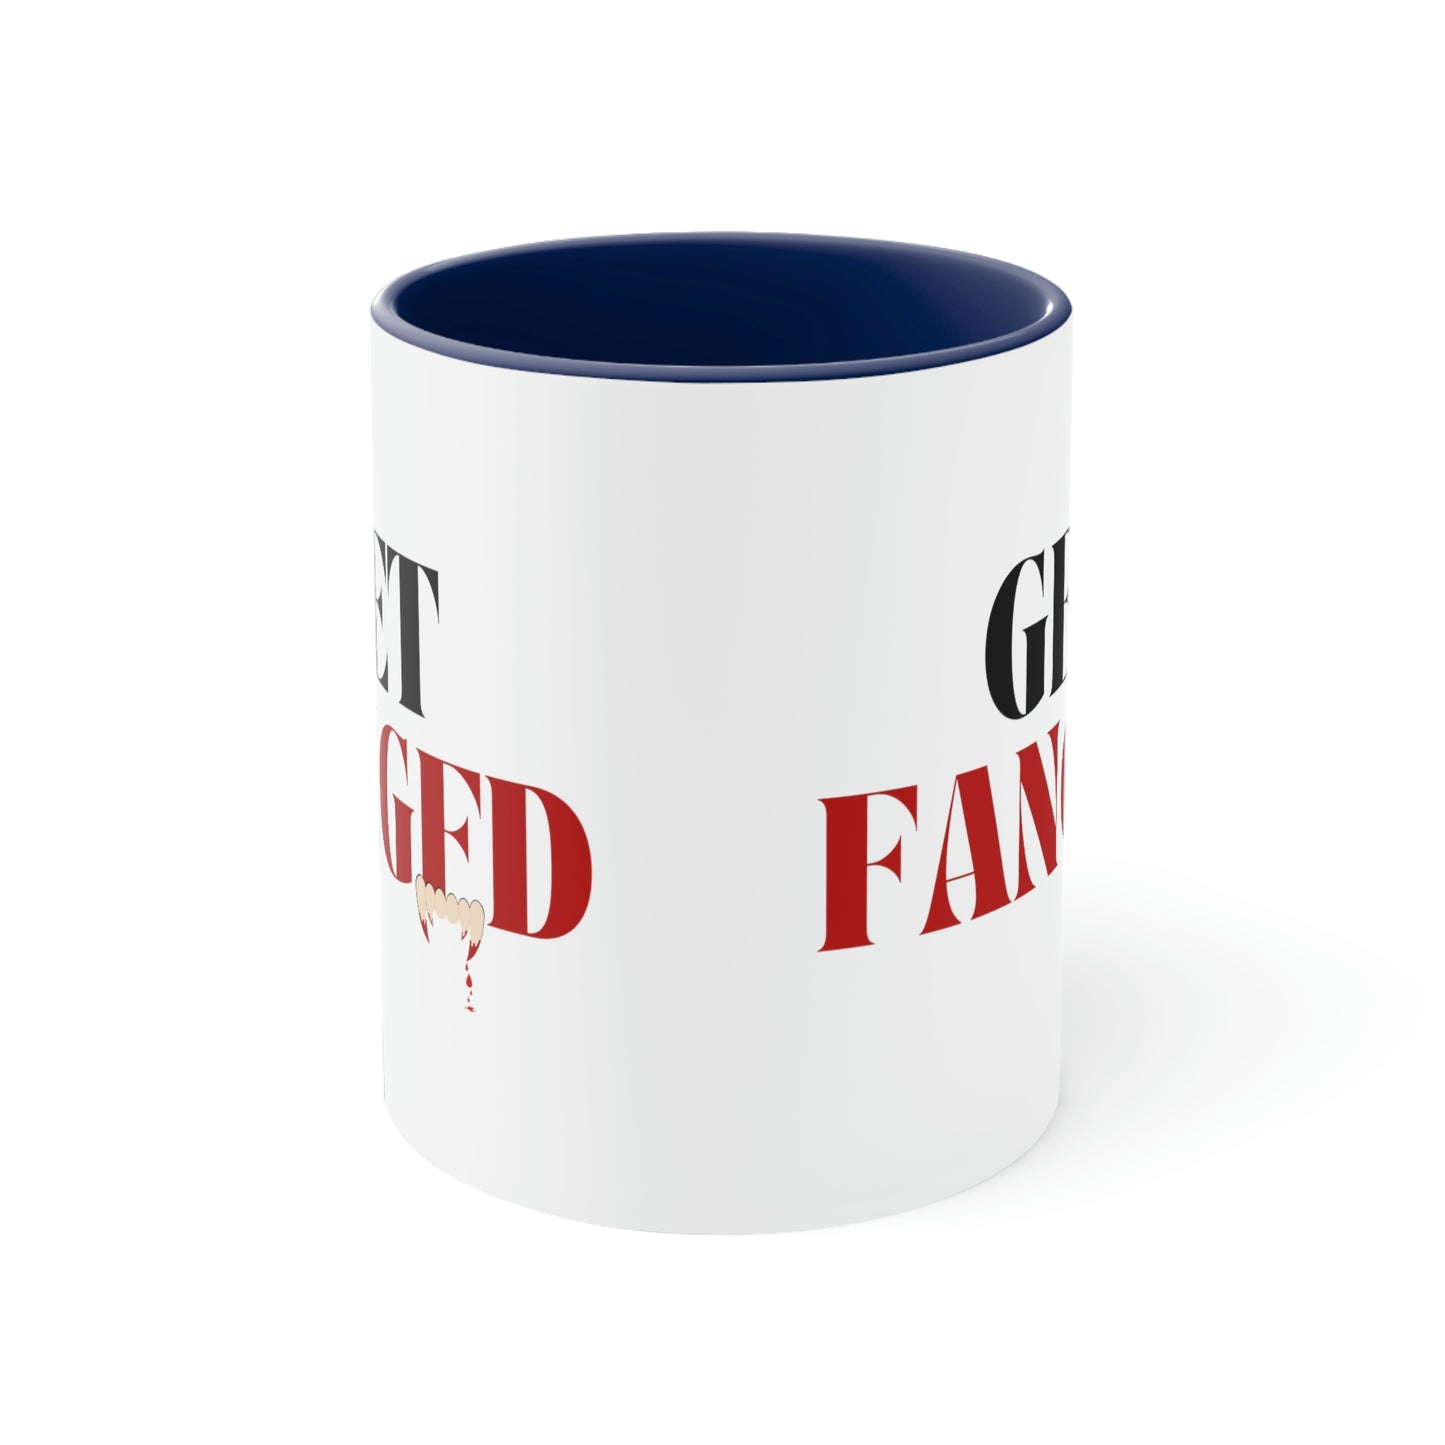 Get Fanged Red Mug